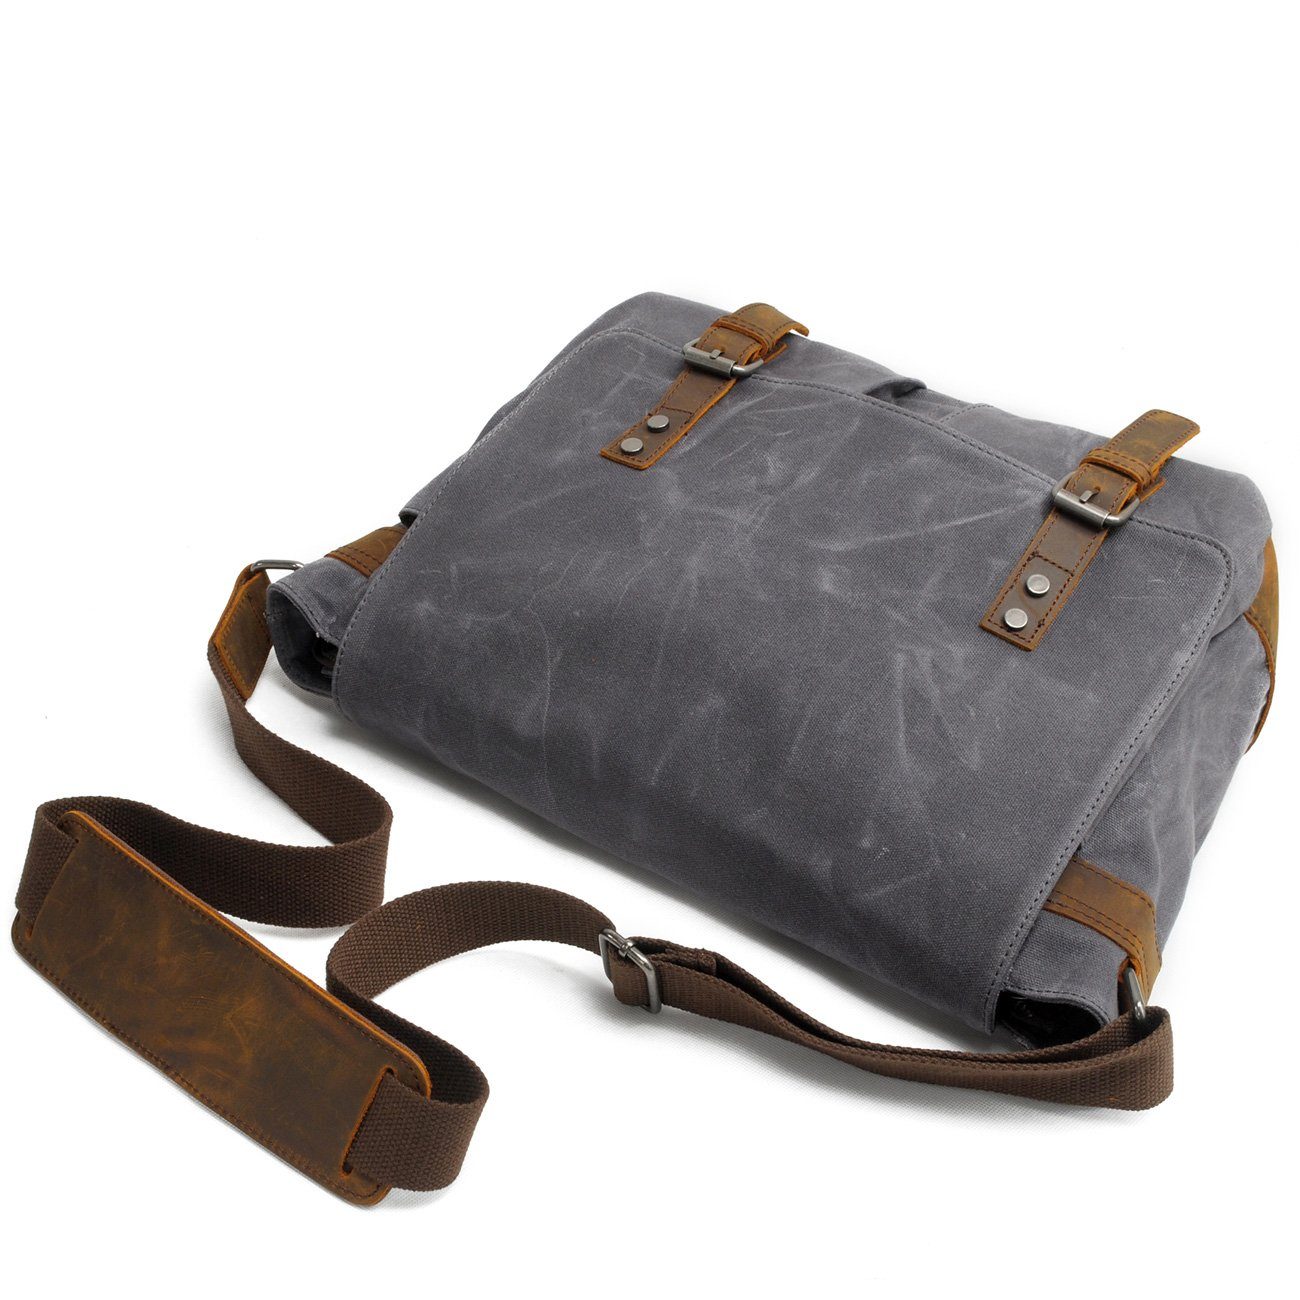 Canvas Leather Messenger Bag Leather Shoulder Bag Laptop 